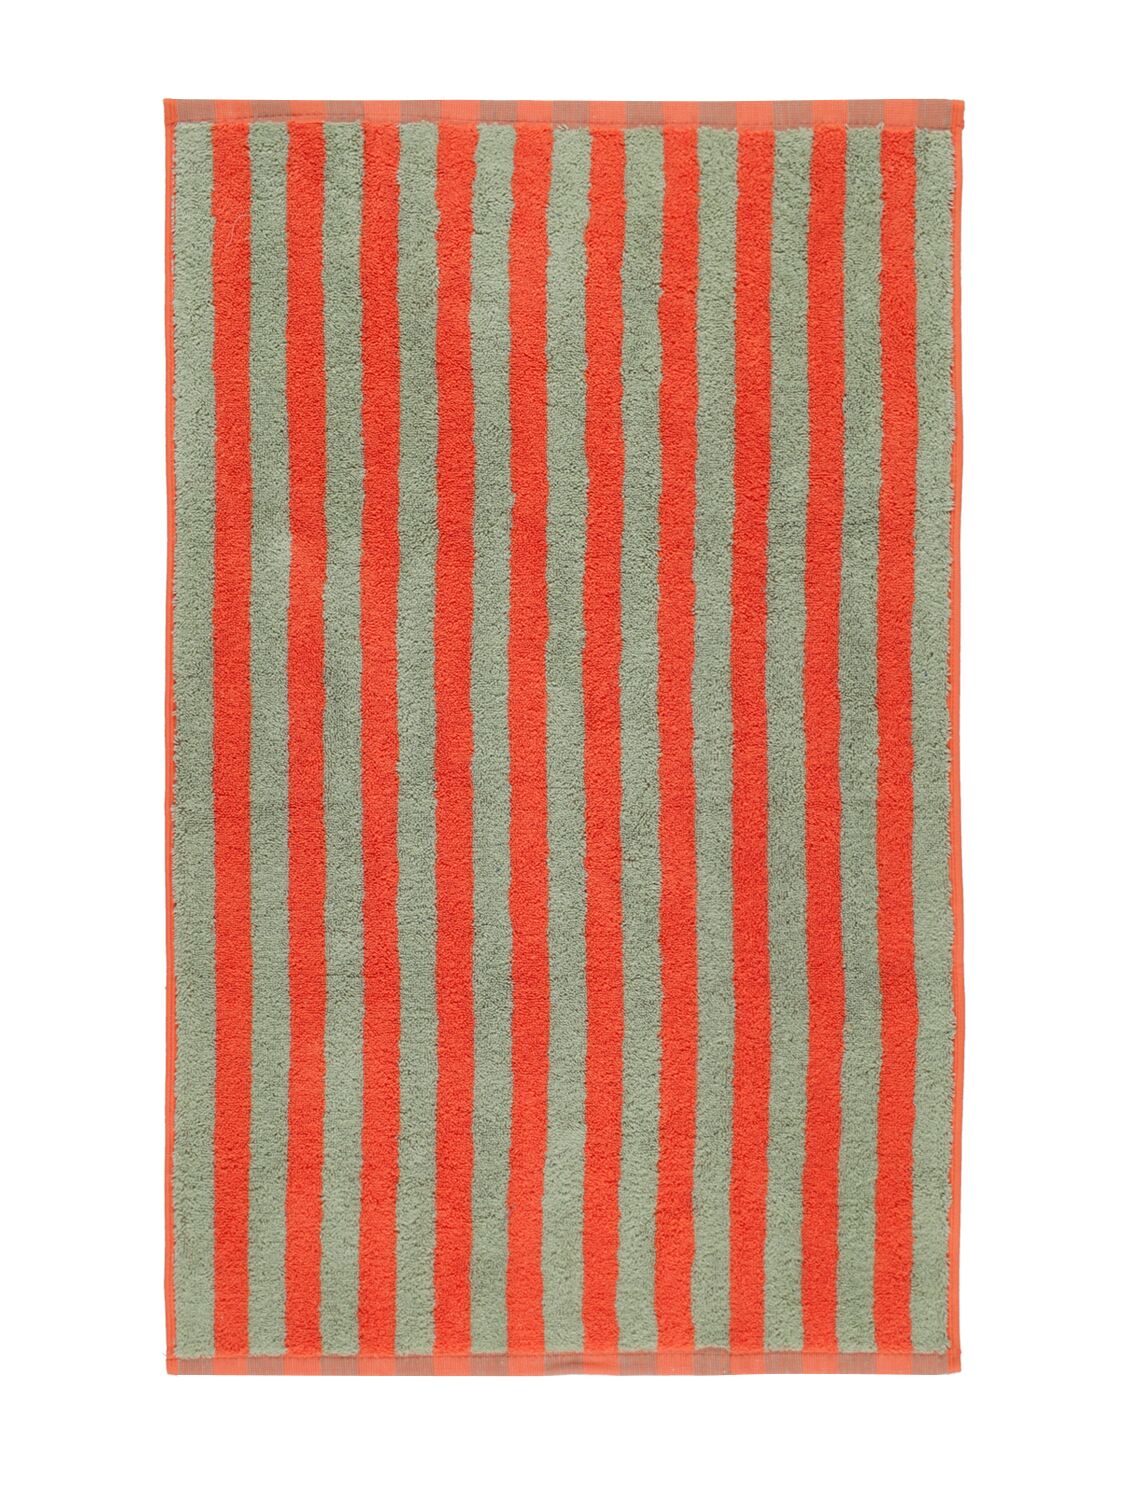 Dusen Dusen Sunset Stripe Cotton Hand Towel In Multicolor